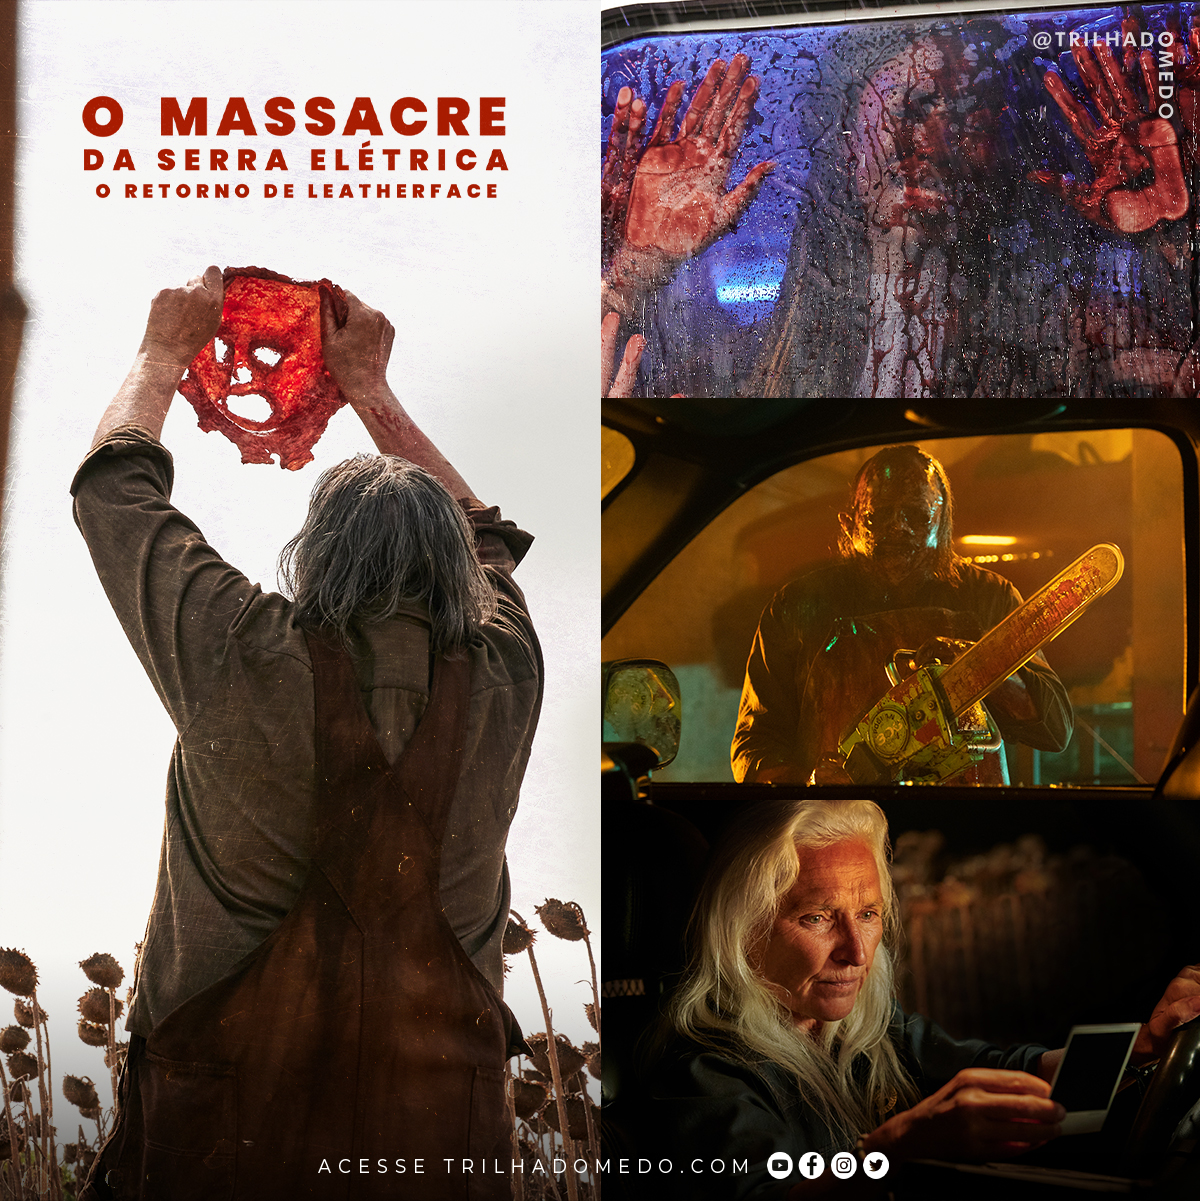 O Massacre da Serra Elétrica: O Retorno de Leatherface estreou na Netflix